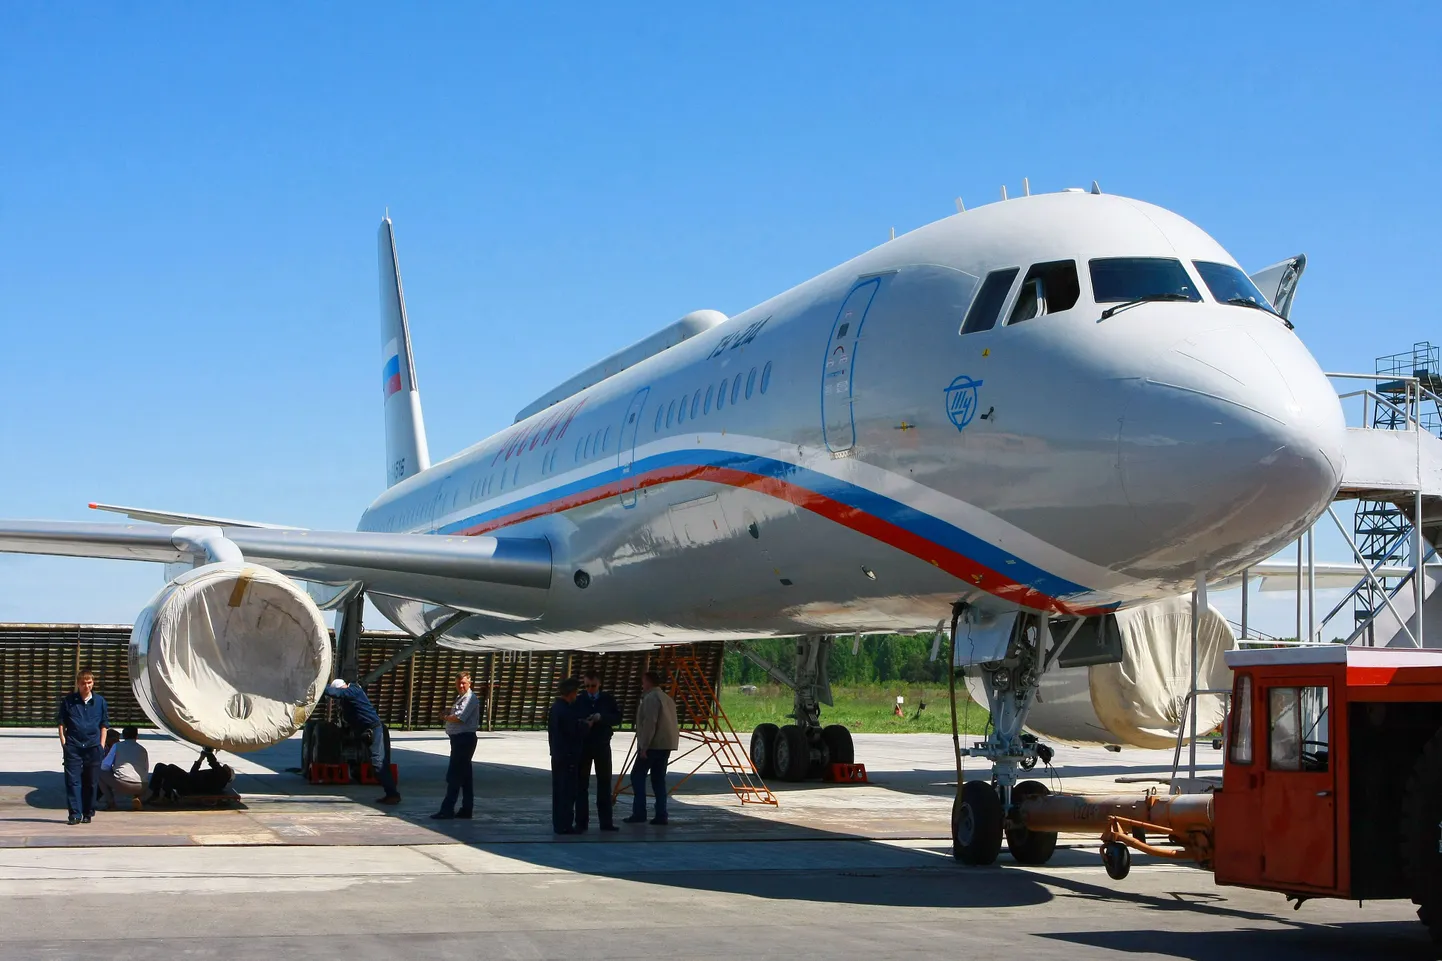 Lennuk TU-214